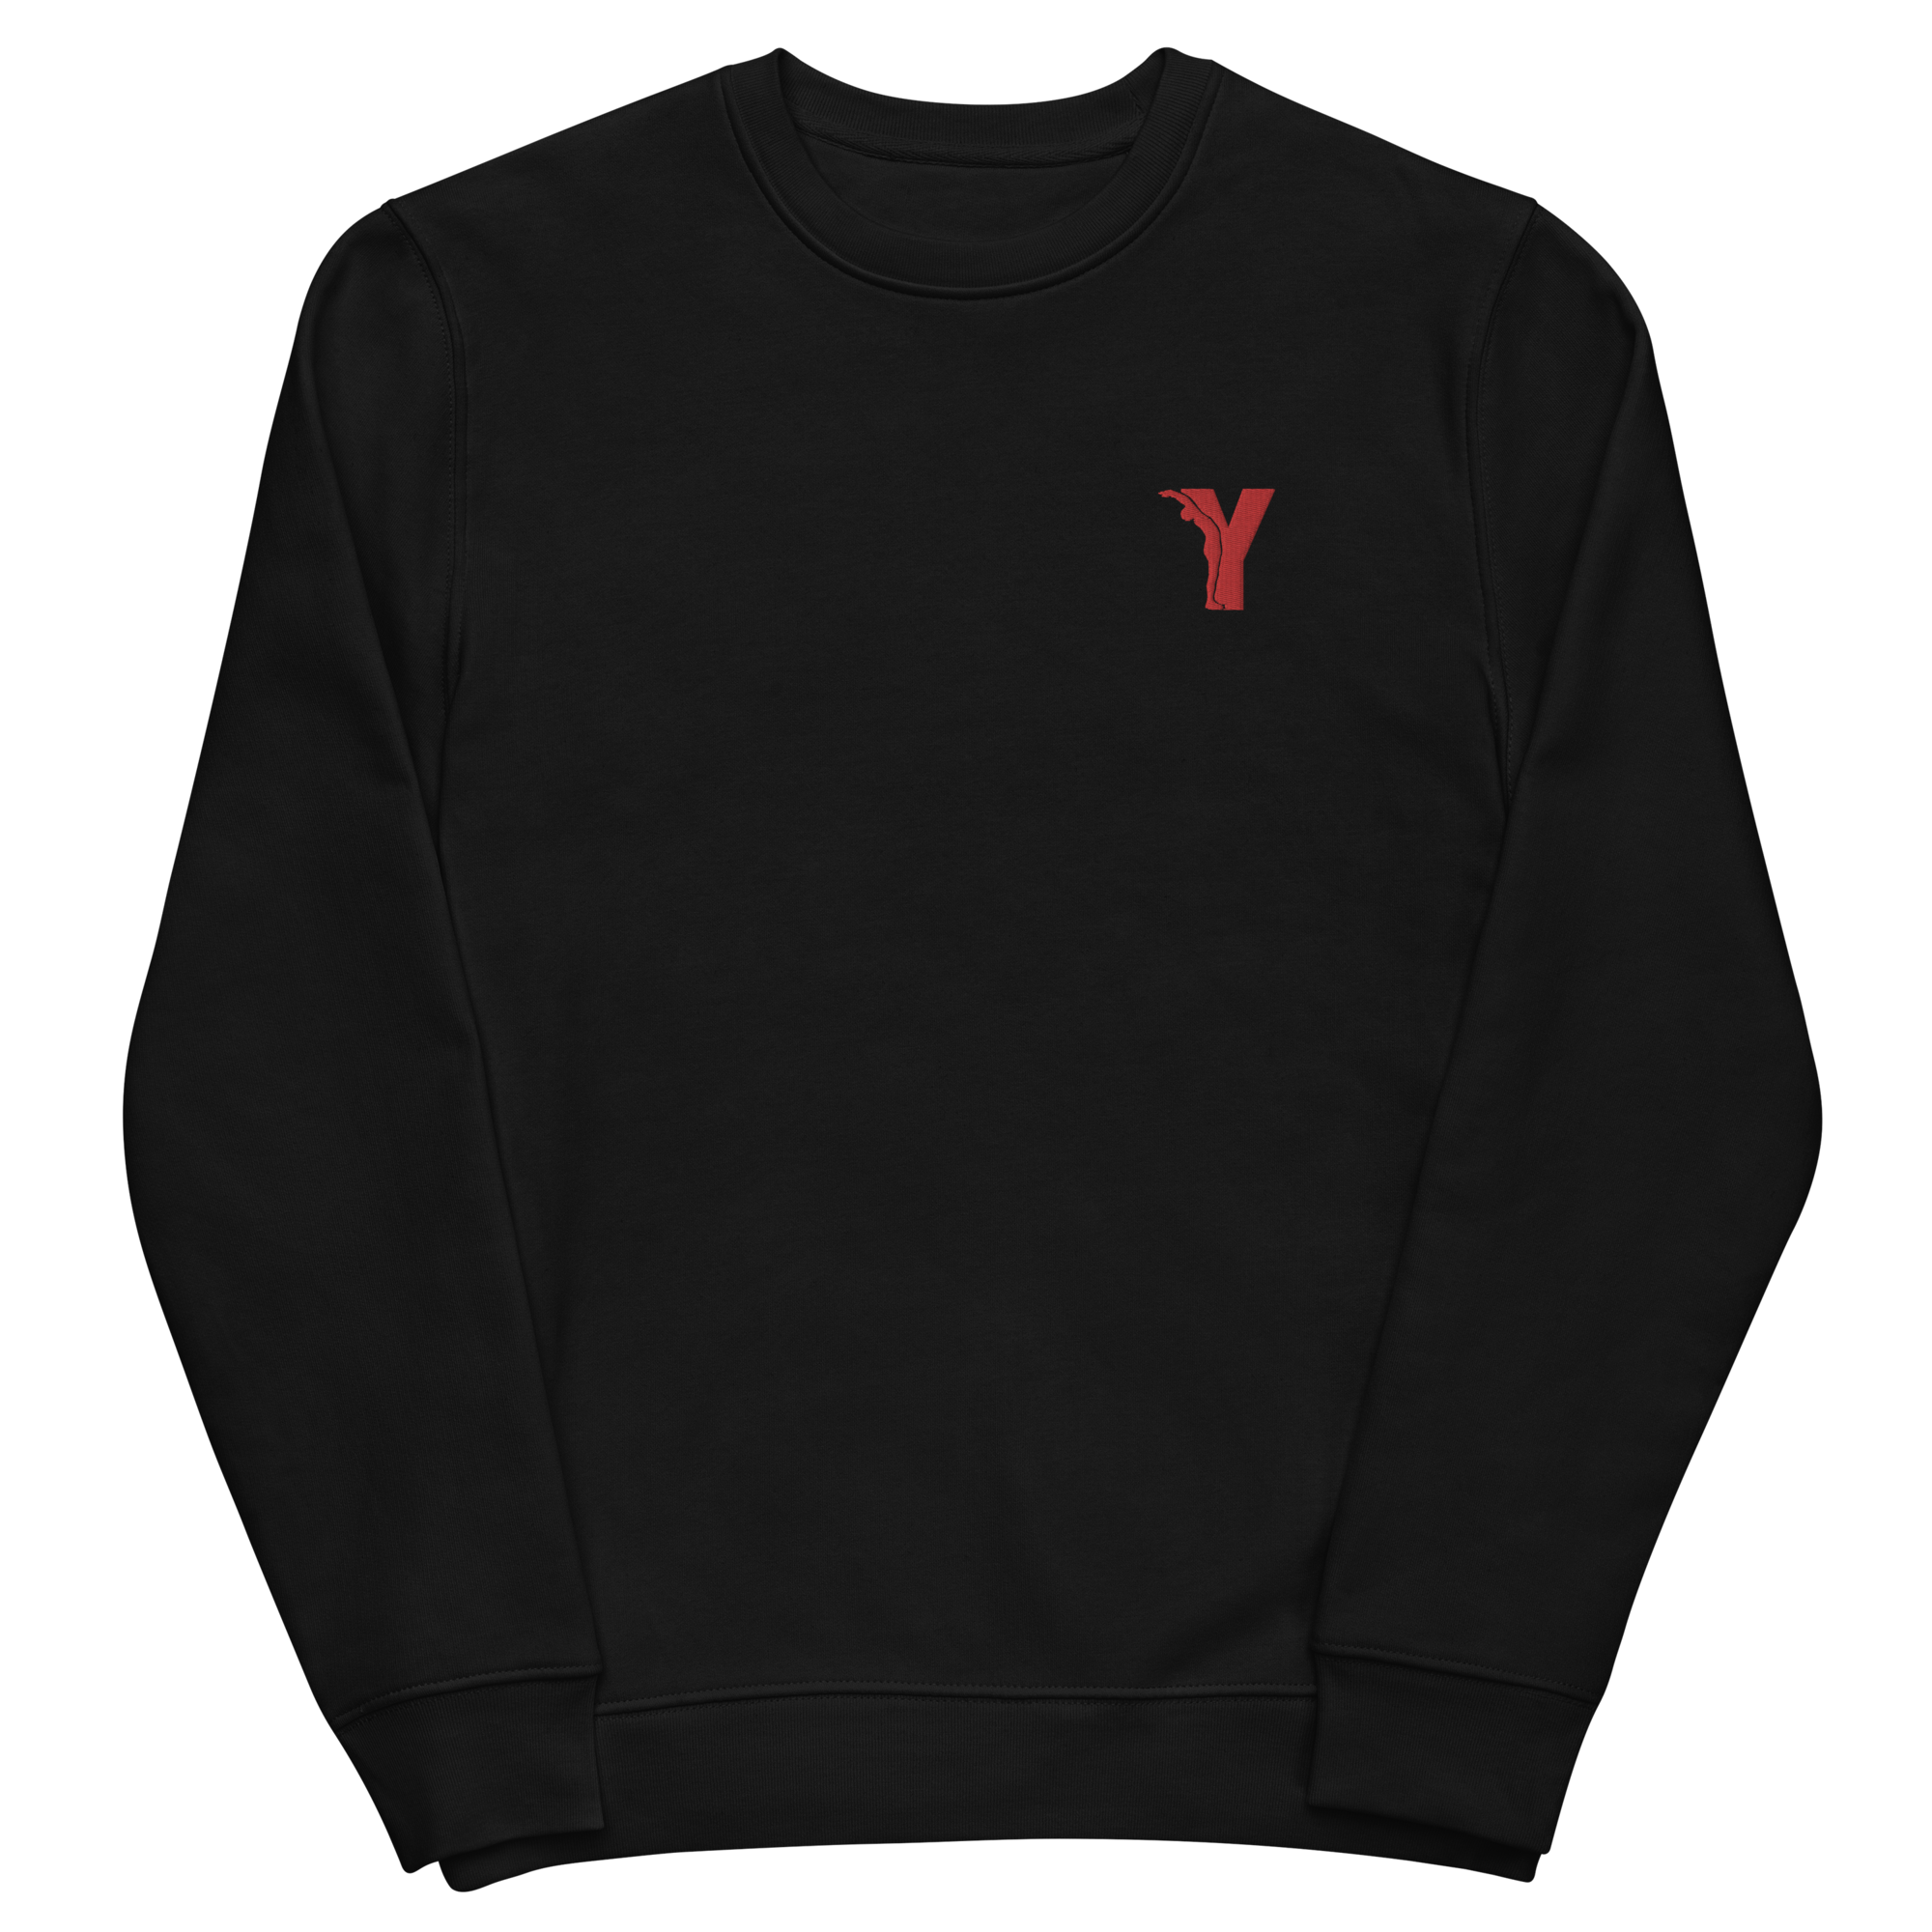 Sweatshirt éco-responsable yoga avec Logo Y Brodé Rouge en Coton Bio - Noir